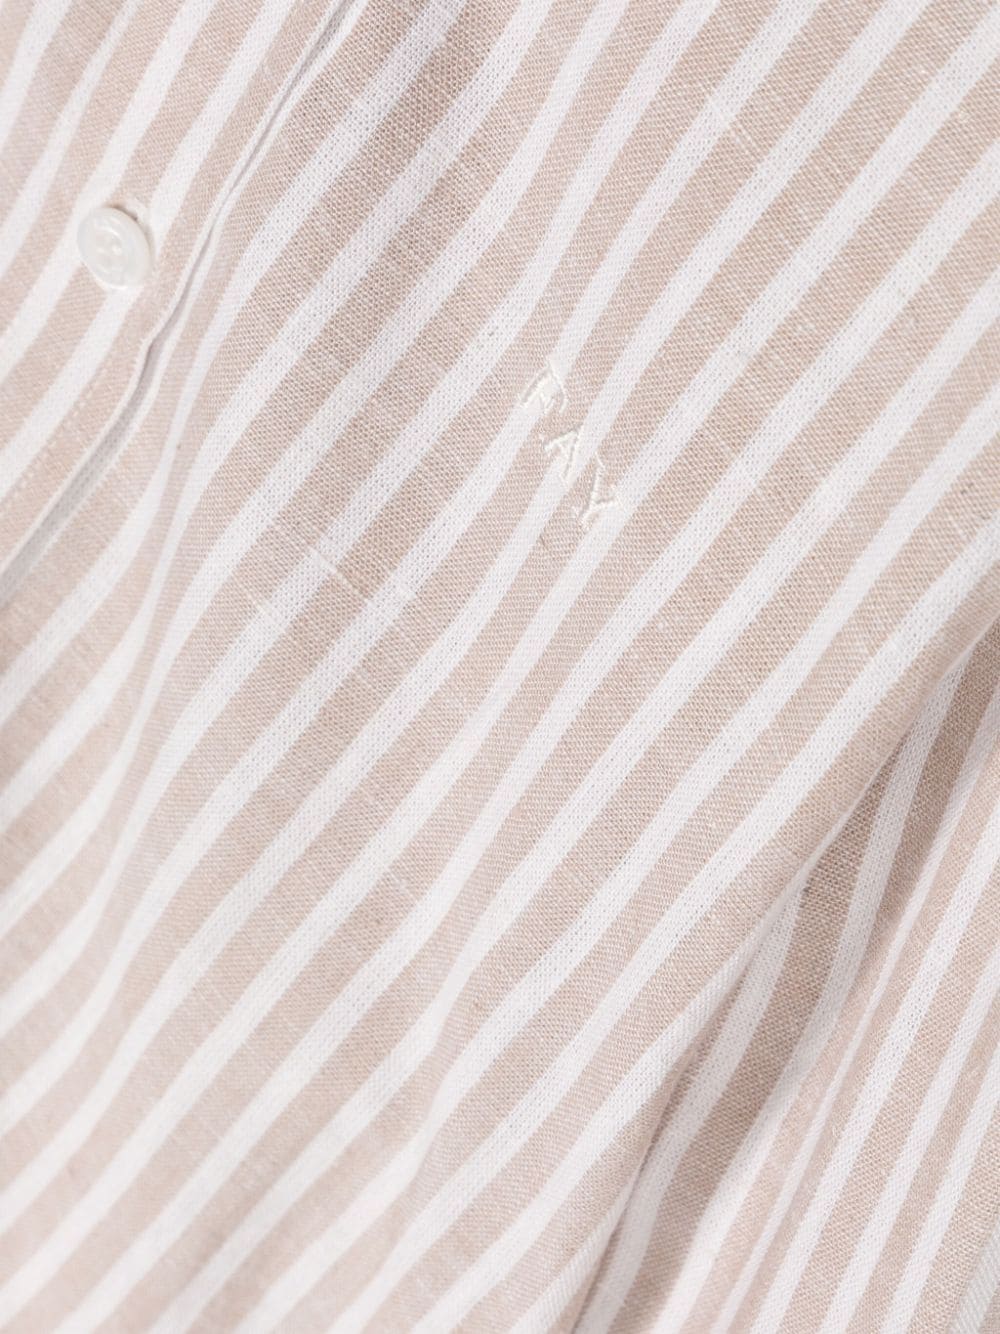 Camicia beige e bianca per bambino con logo